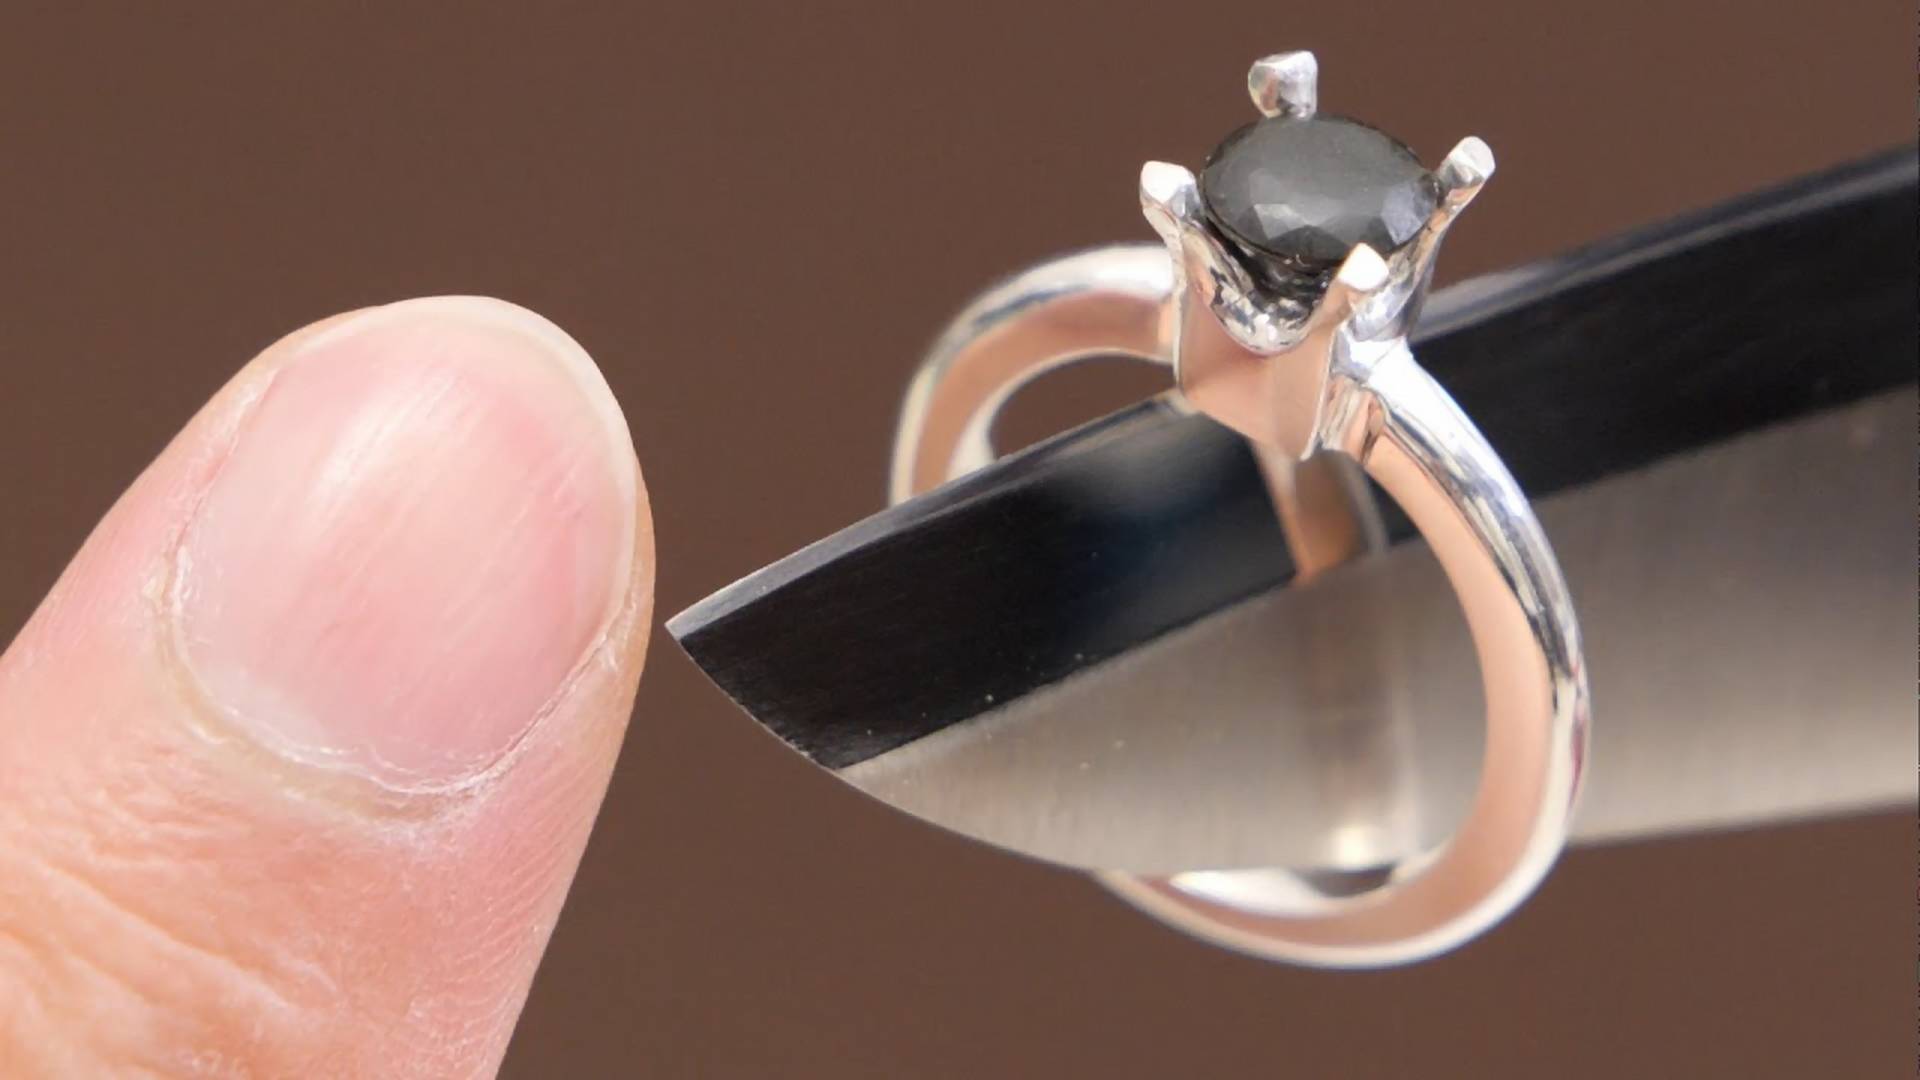 Levágott körméből készített eljegyzési gyűrűt szerelmének egy férfi - videó